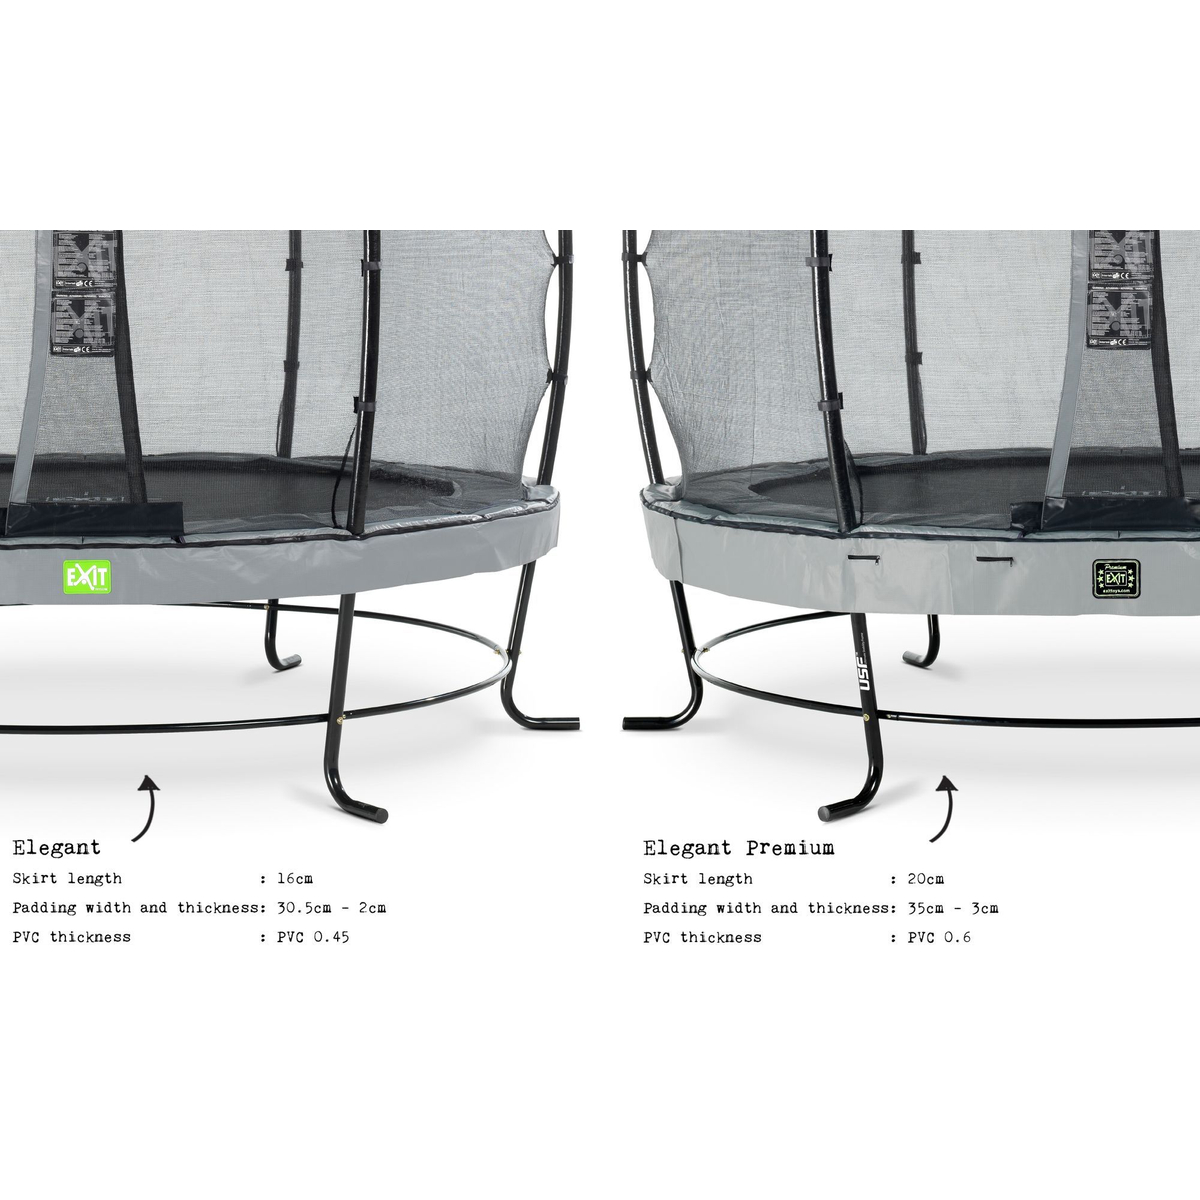 Exit Elegant Premium Trampoline 305 + Safetynet Deluxe Grijs